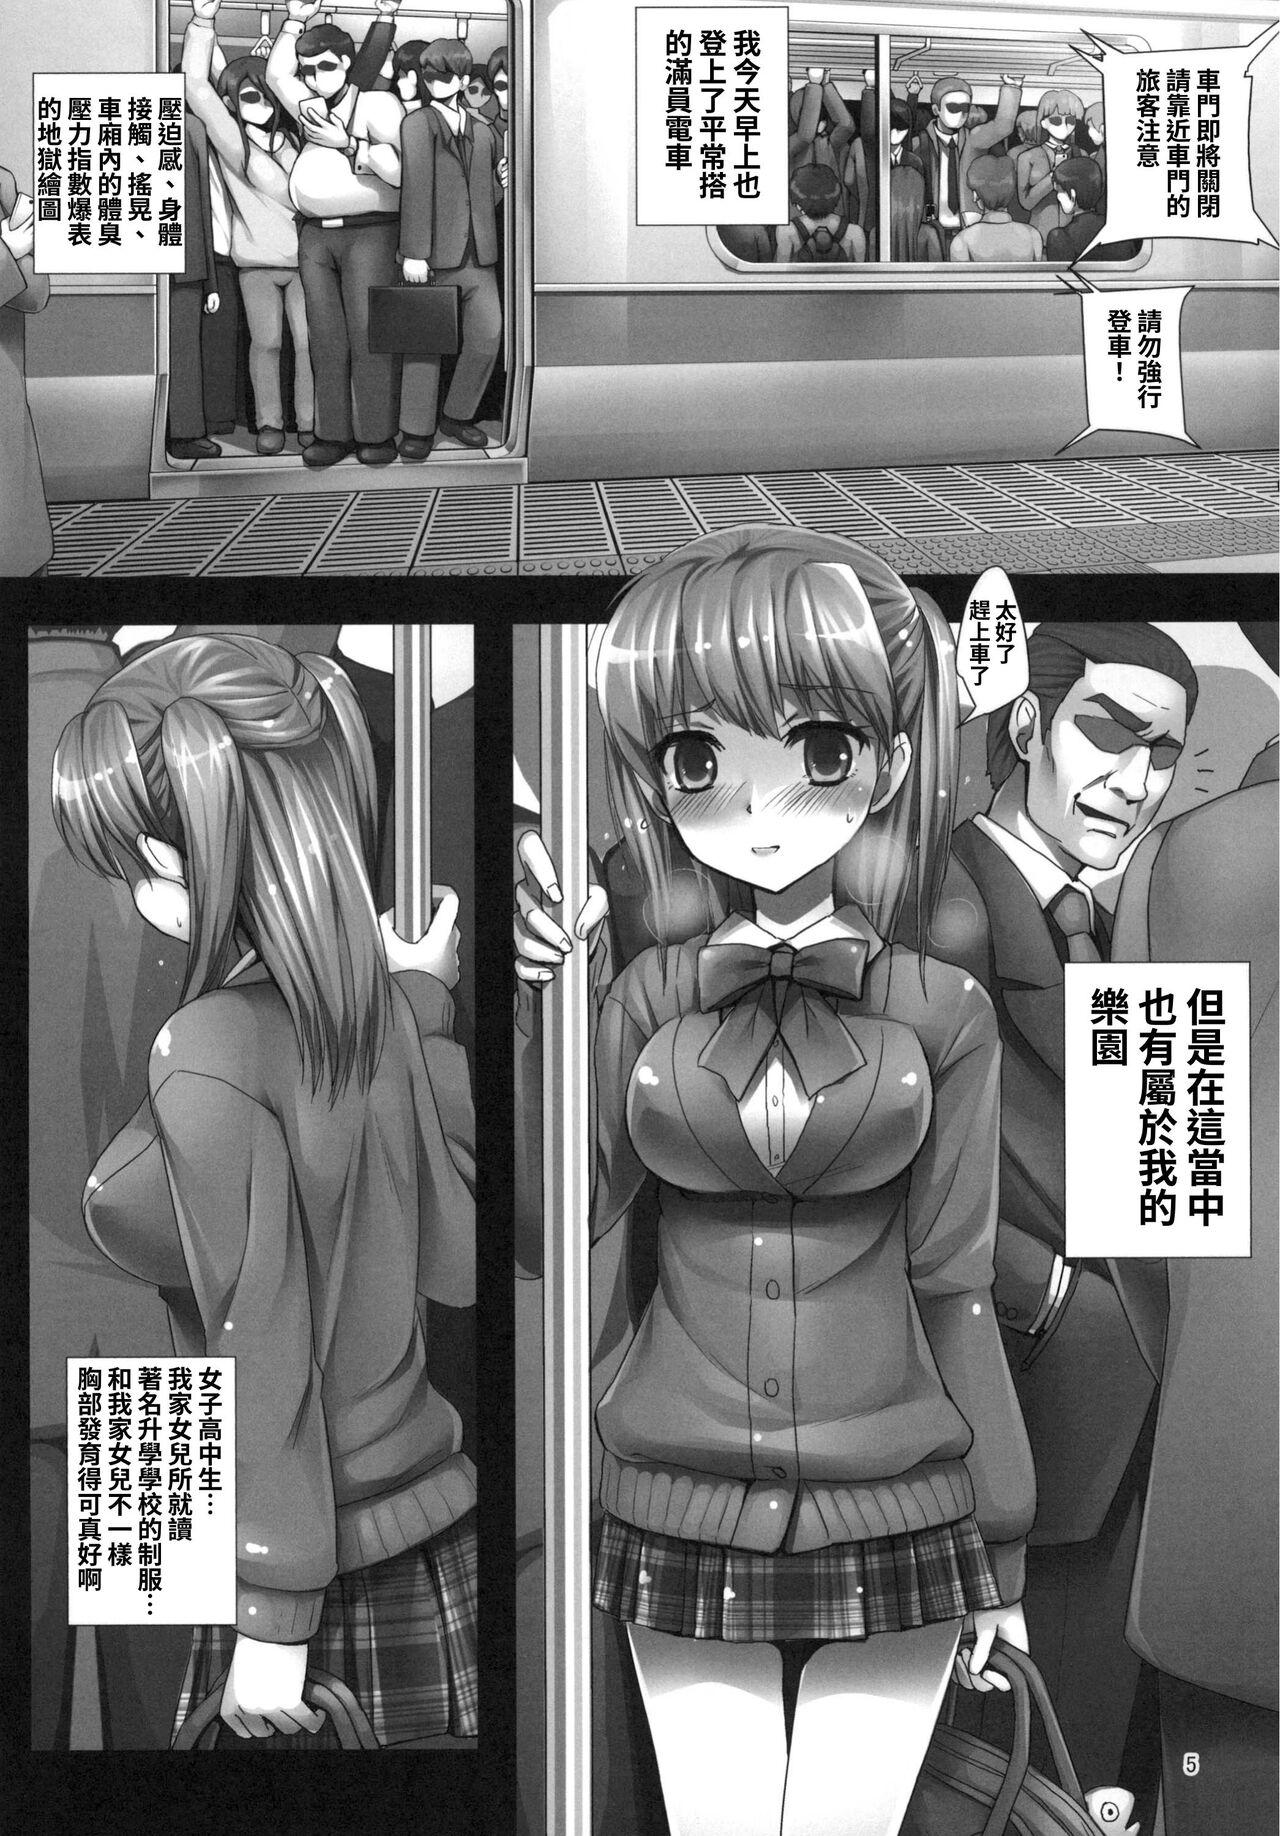 Titten 【繁体中文版】朝の満員電車で処女JKをどこまで開発できるのか - Original Amature - Page 5